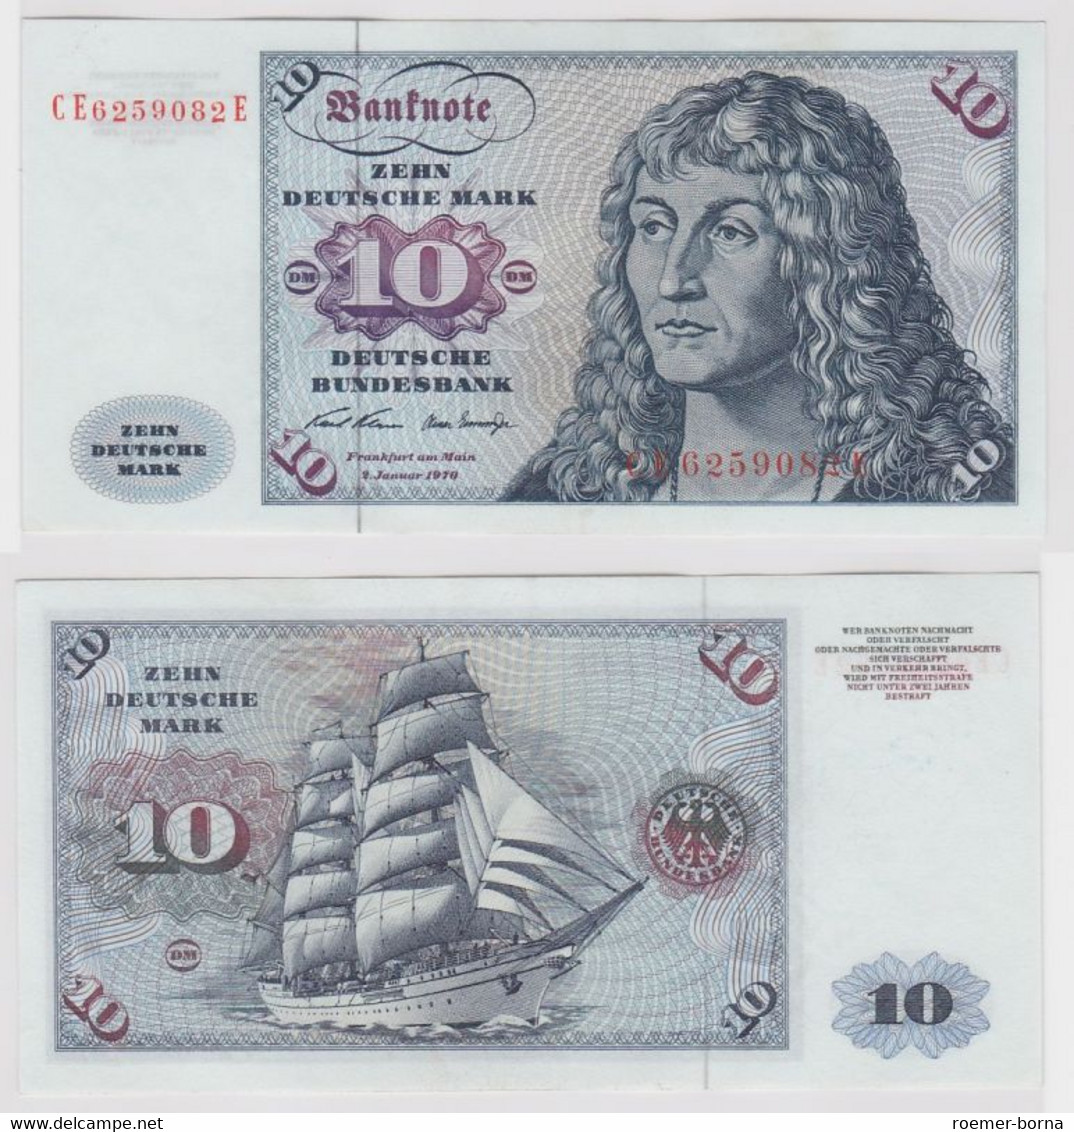 T147378 Banknote 10 DM Deutsche Mark Ro. 270b Schein 2.Jan. 1970 KN CE 6259082 E - 10 Deutsche Mark